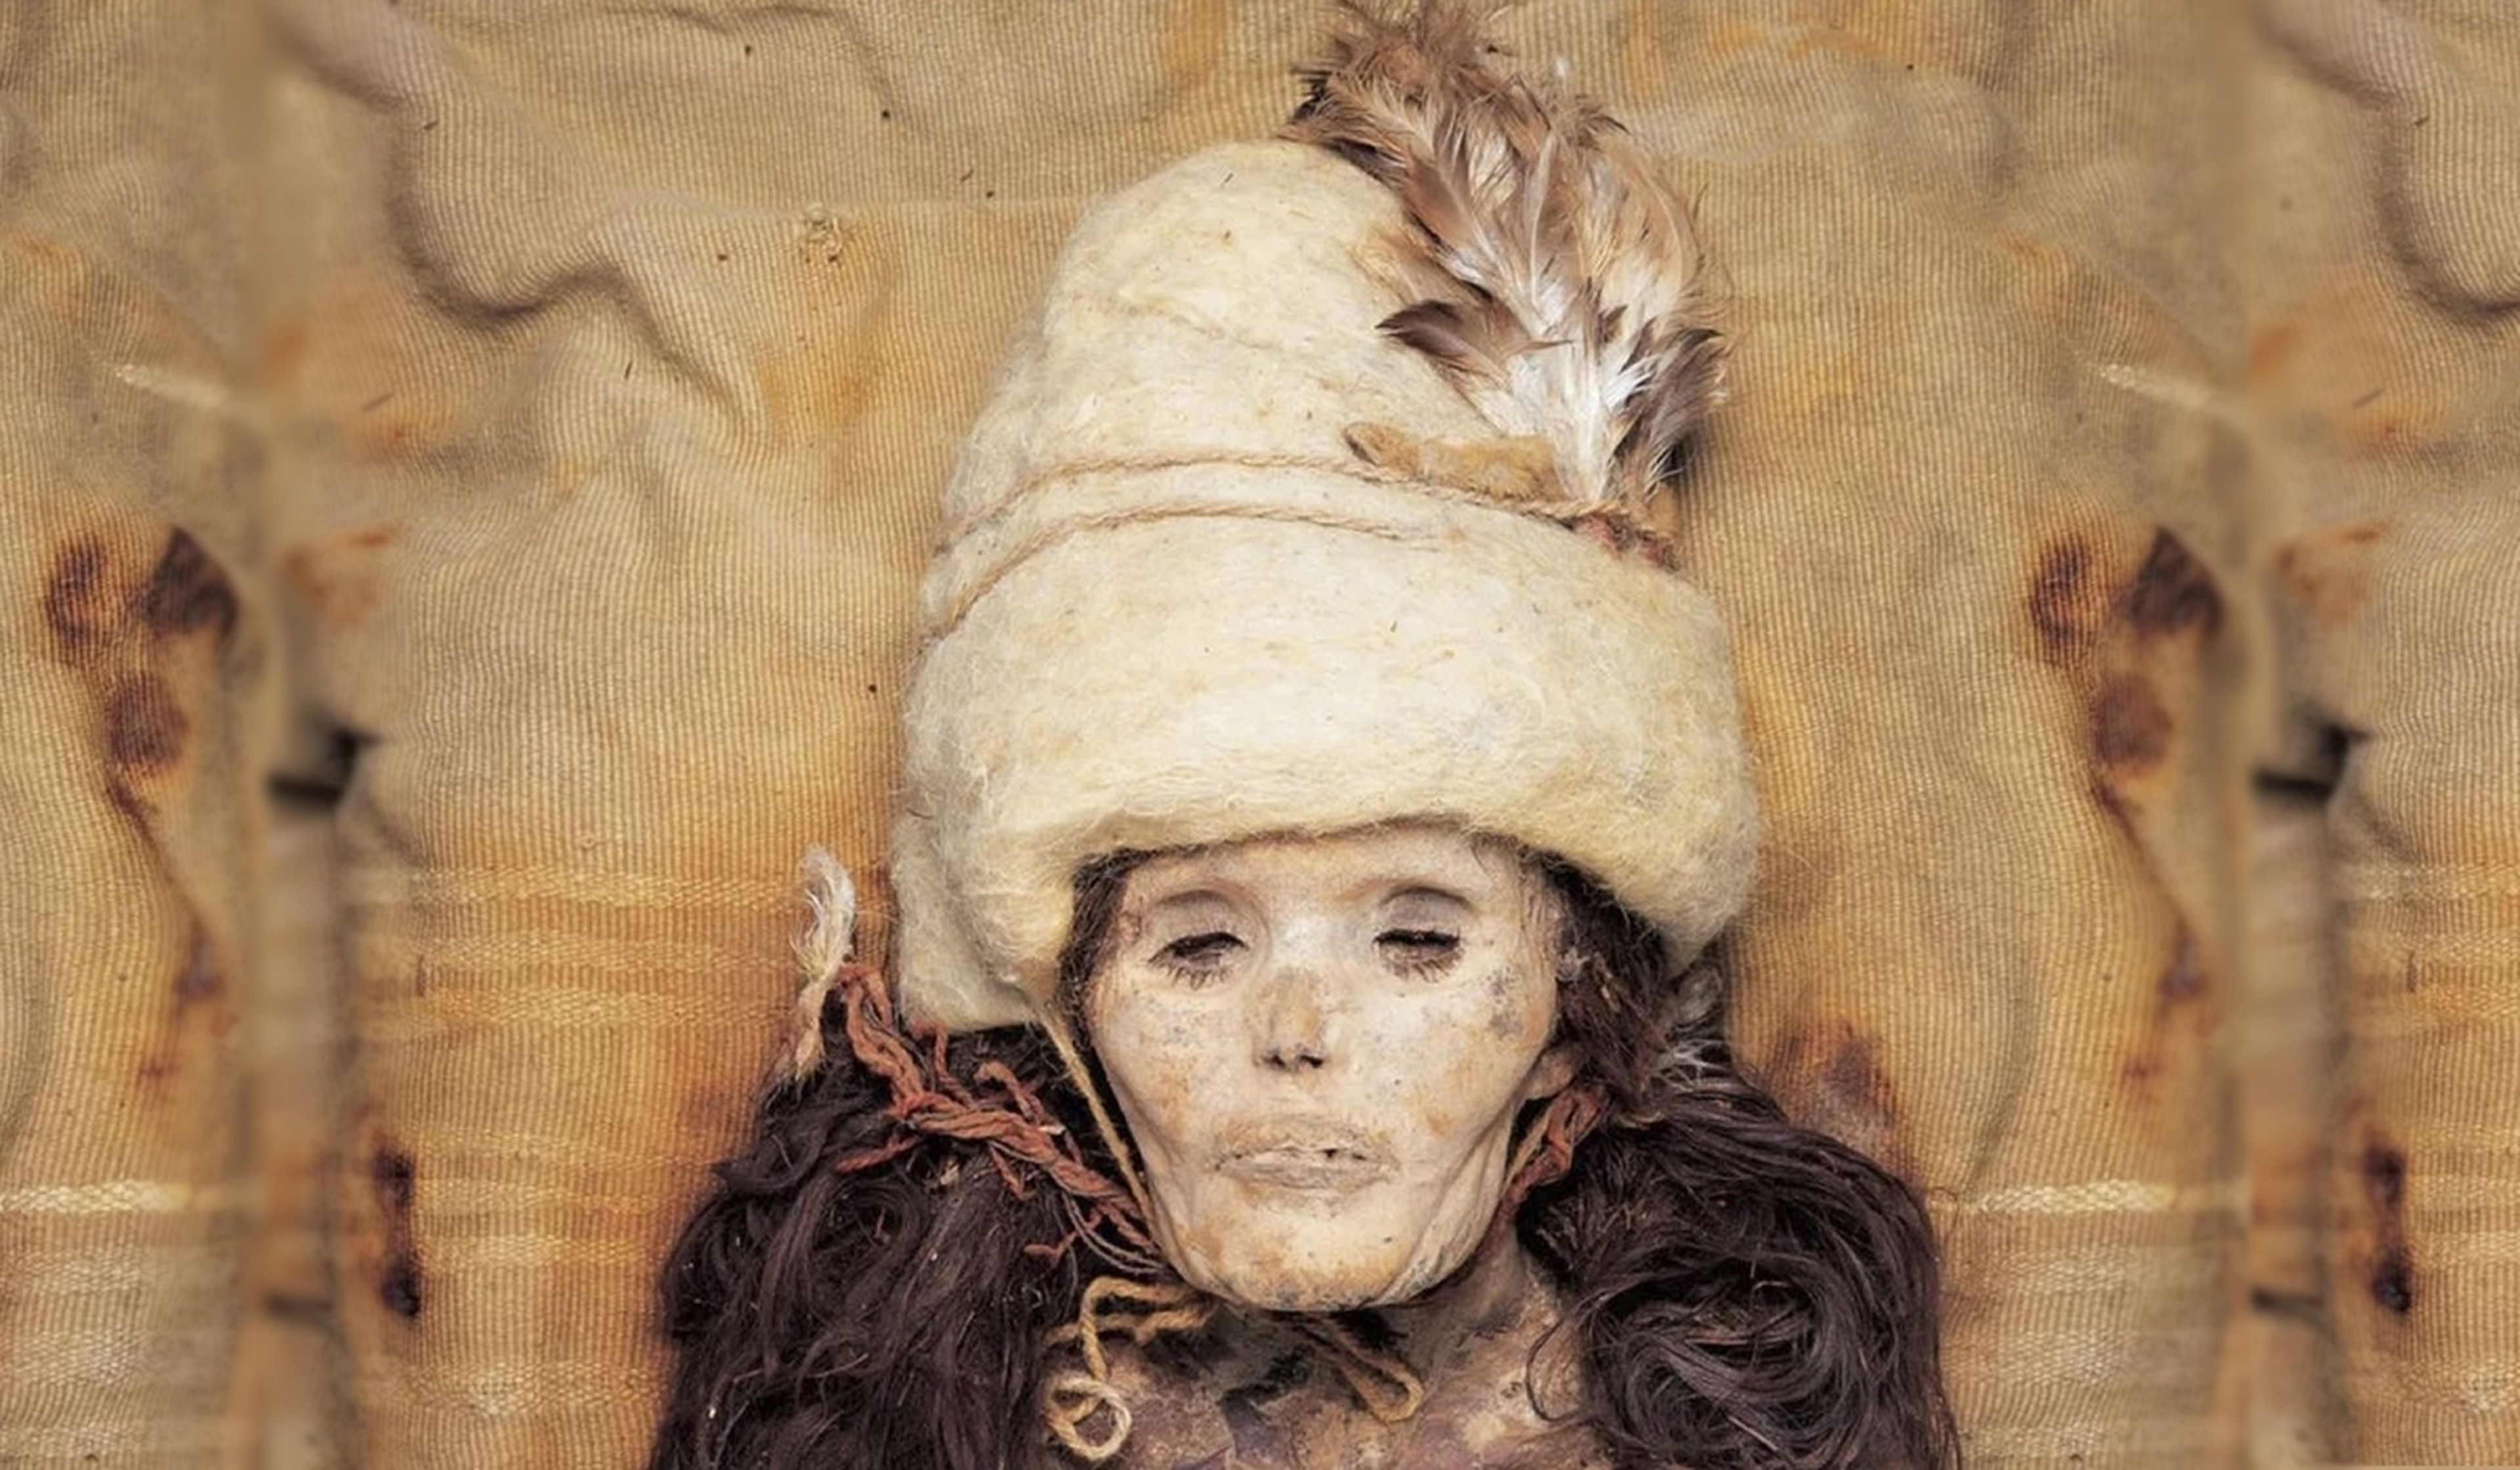 Descubierto el misterio de las momias de hace 4.000 años con ropas y peinados modernos